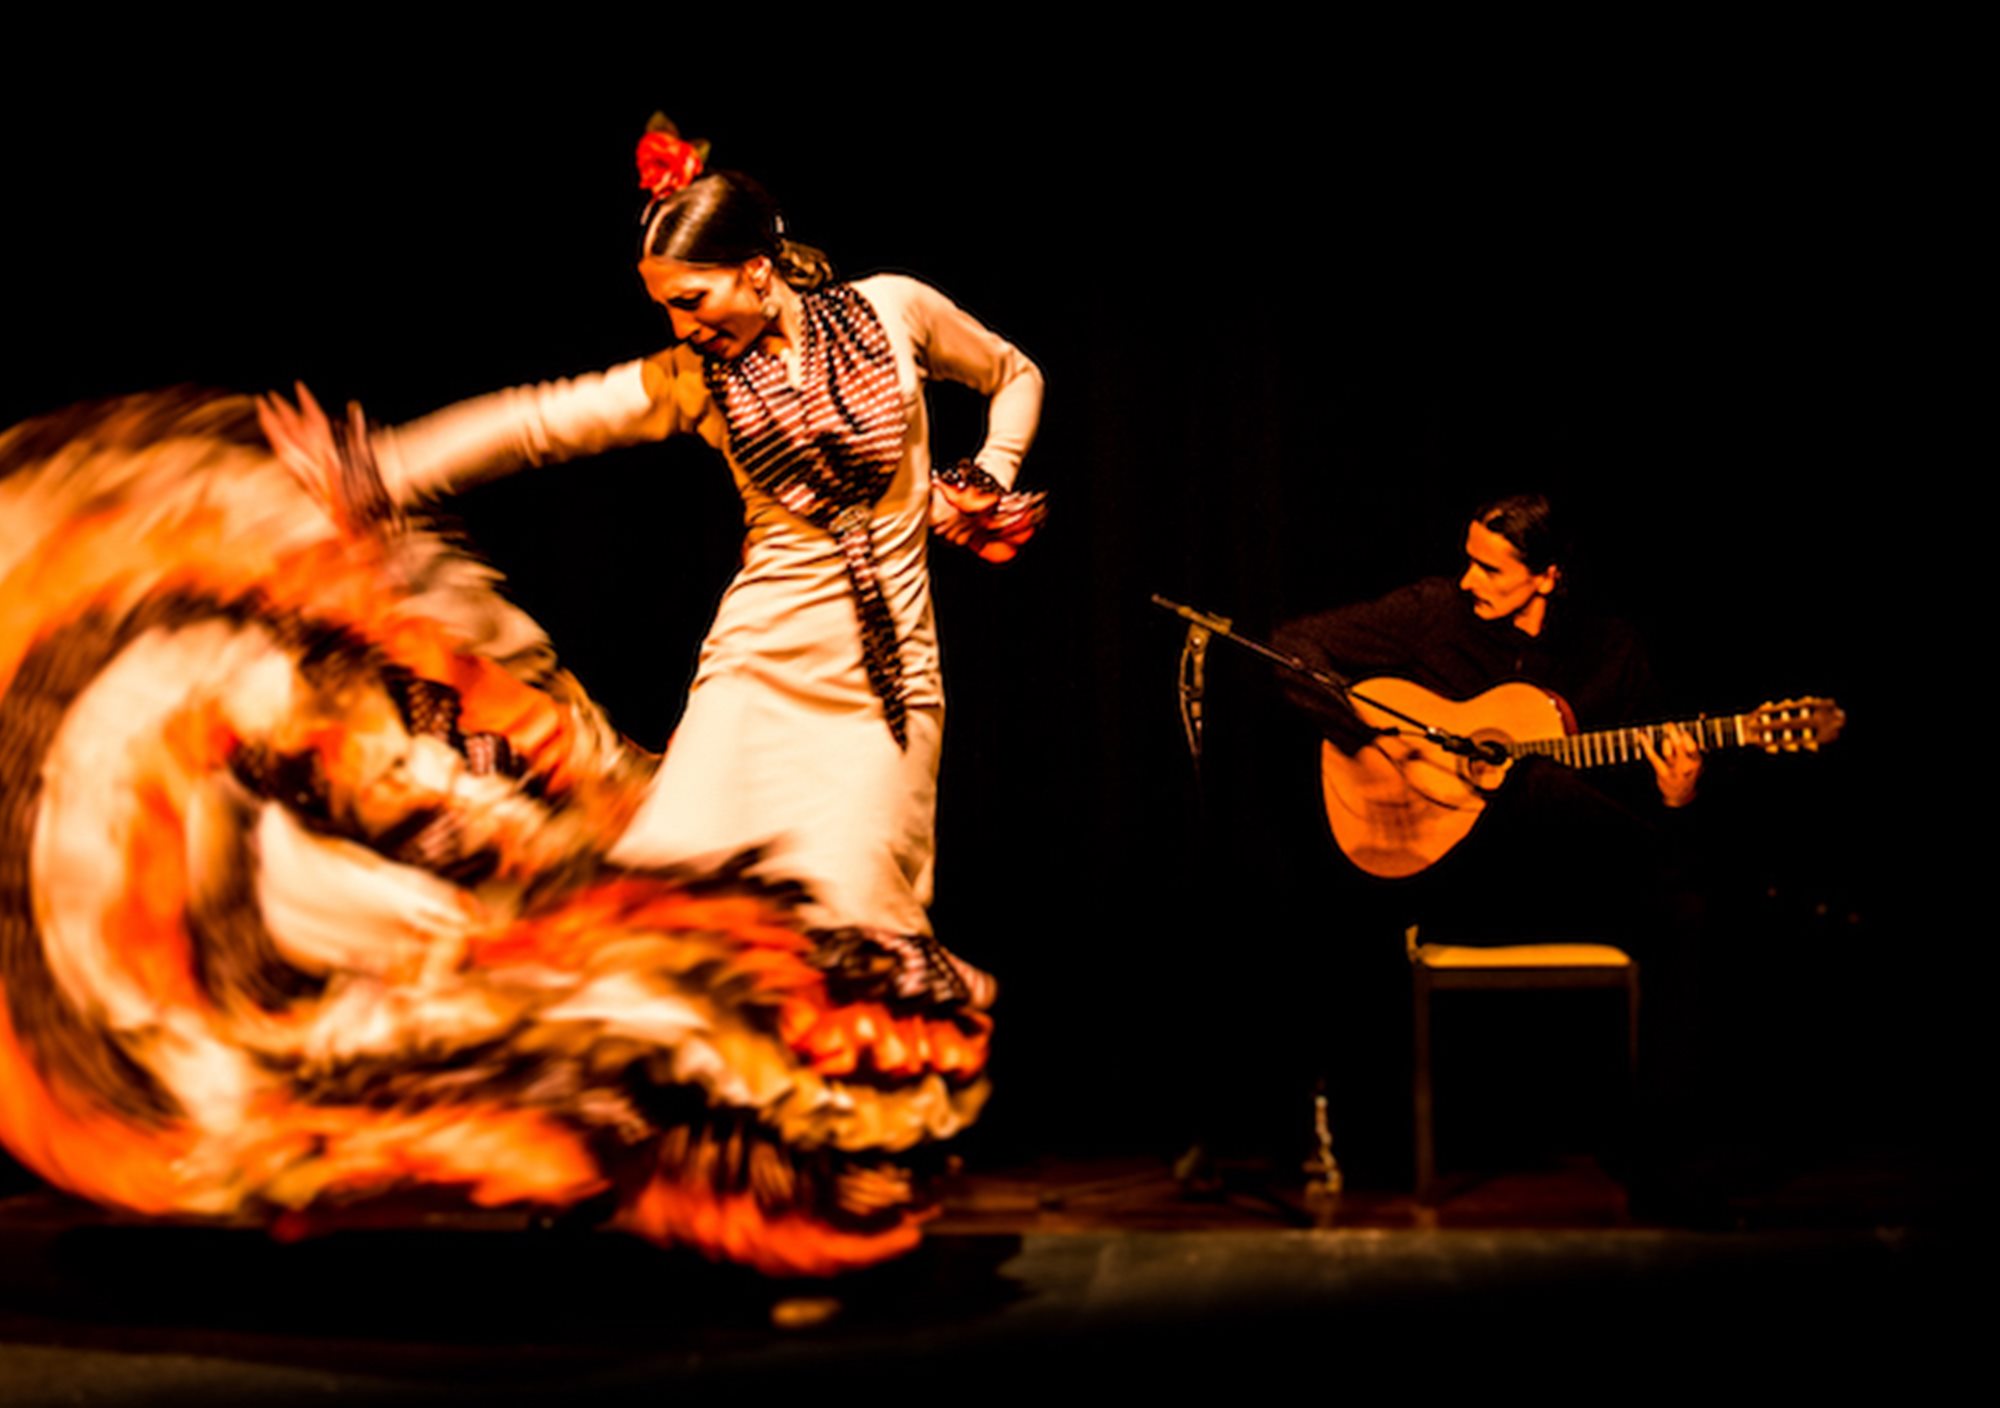 reservar online show tickets Espectáculo Flamenco en La Cueva de Lola madrid